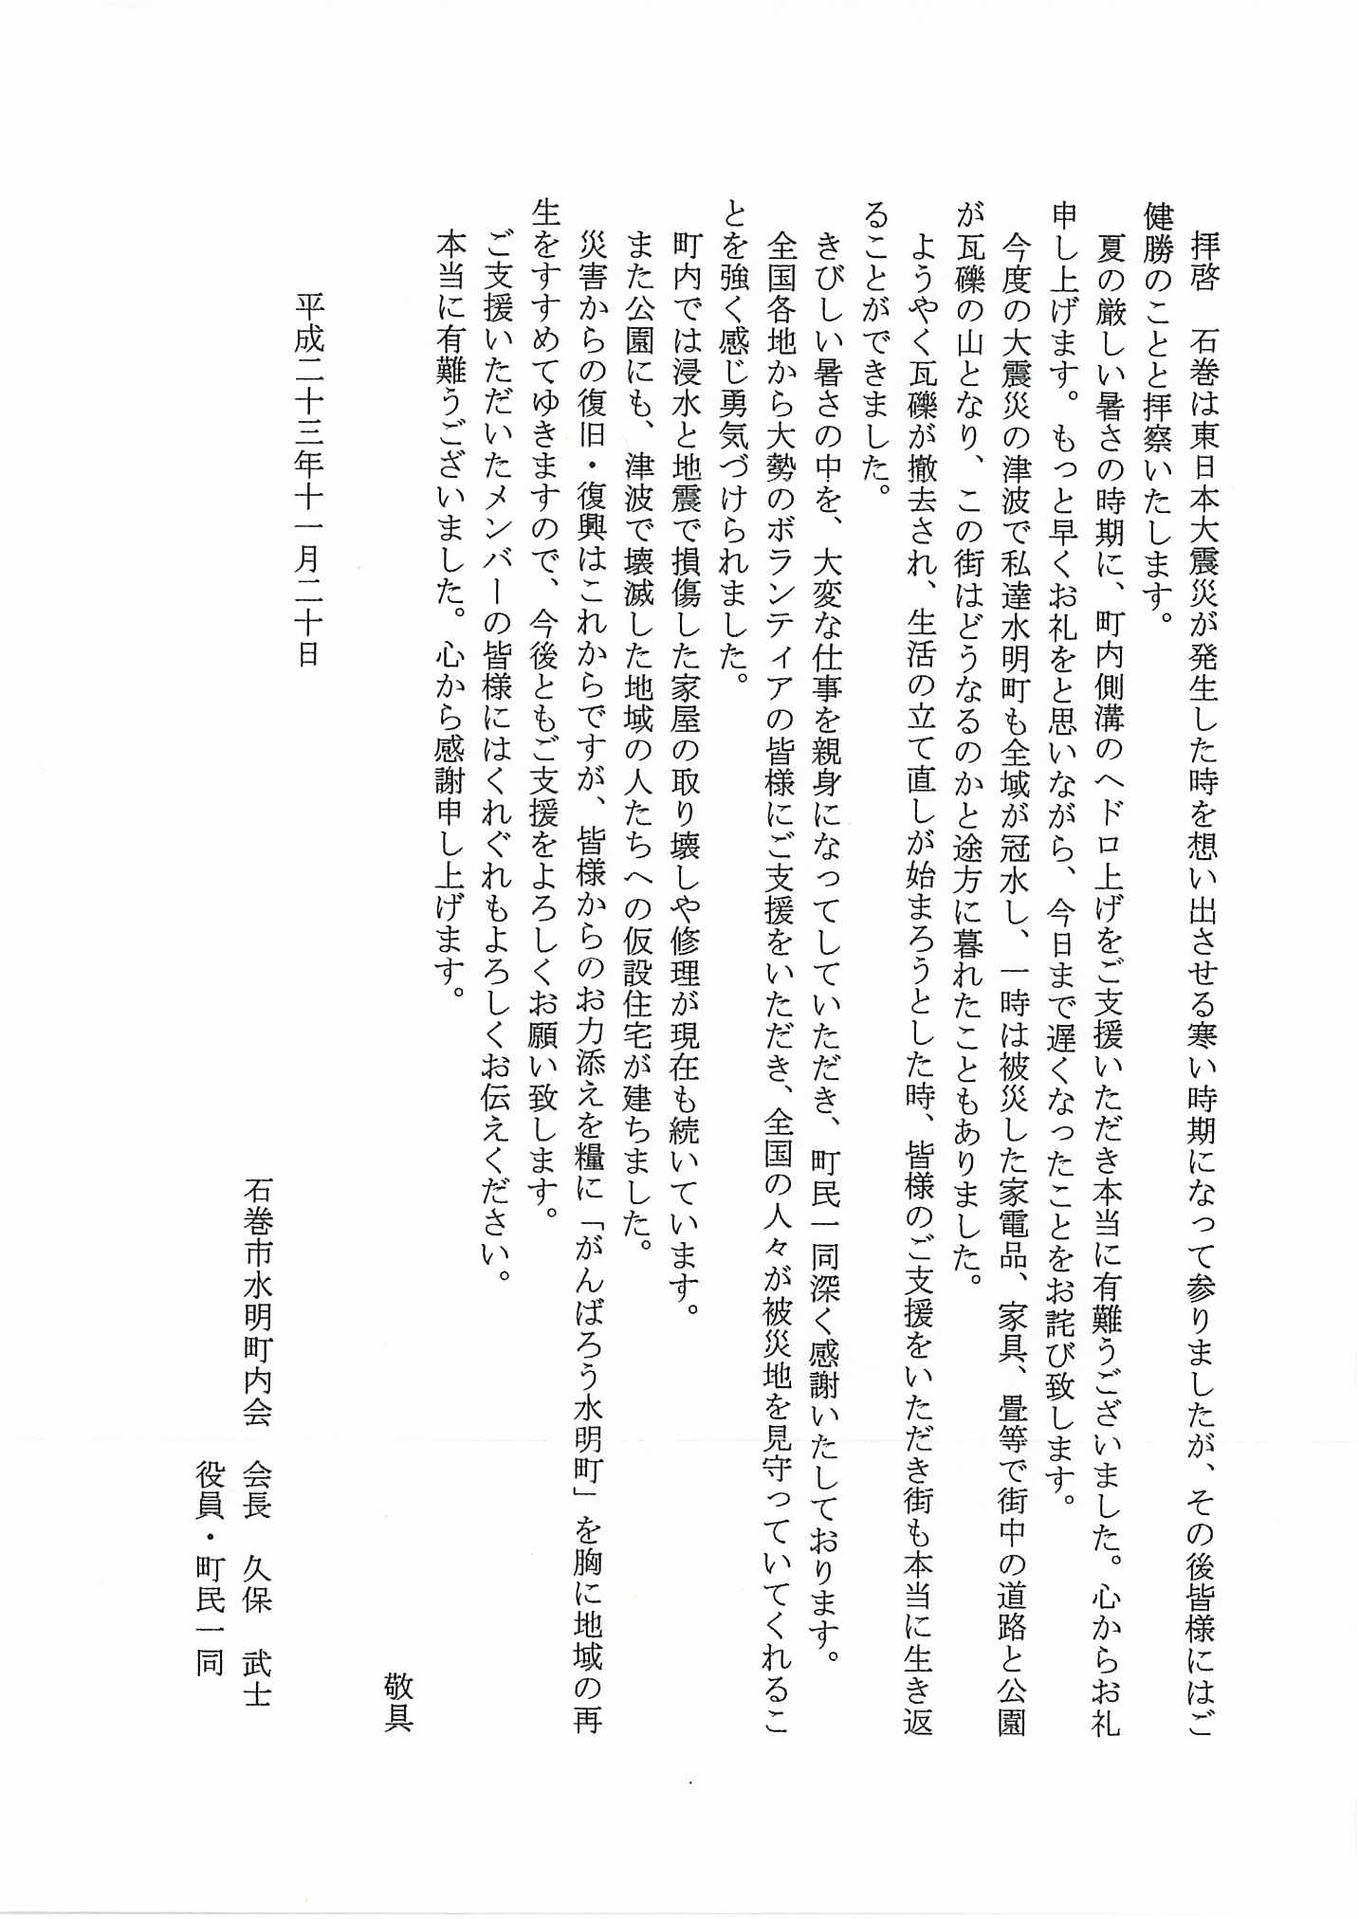 お礼のお手紙をいただきました 鳥取県ボランティア・市民活動センター 災害関連情報